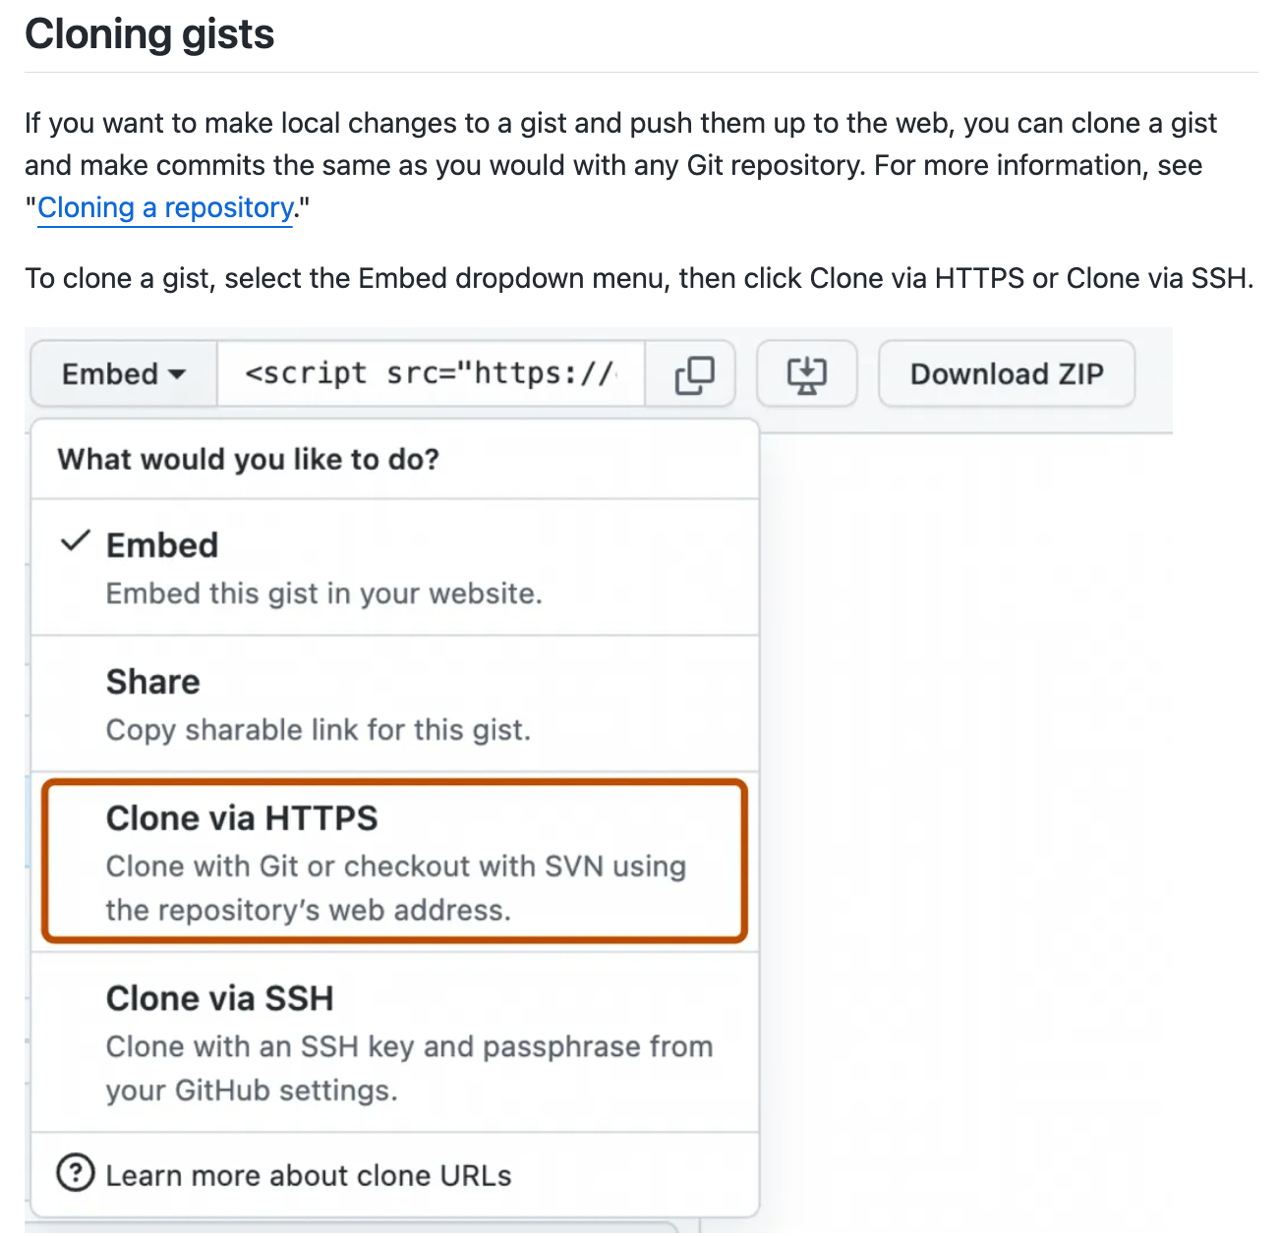 Снимок экрана: статья с инструкциями и снимок экрана пользовательского интерфейса для клонирования gist на GitHub.